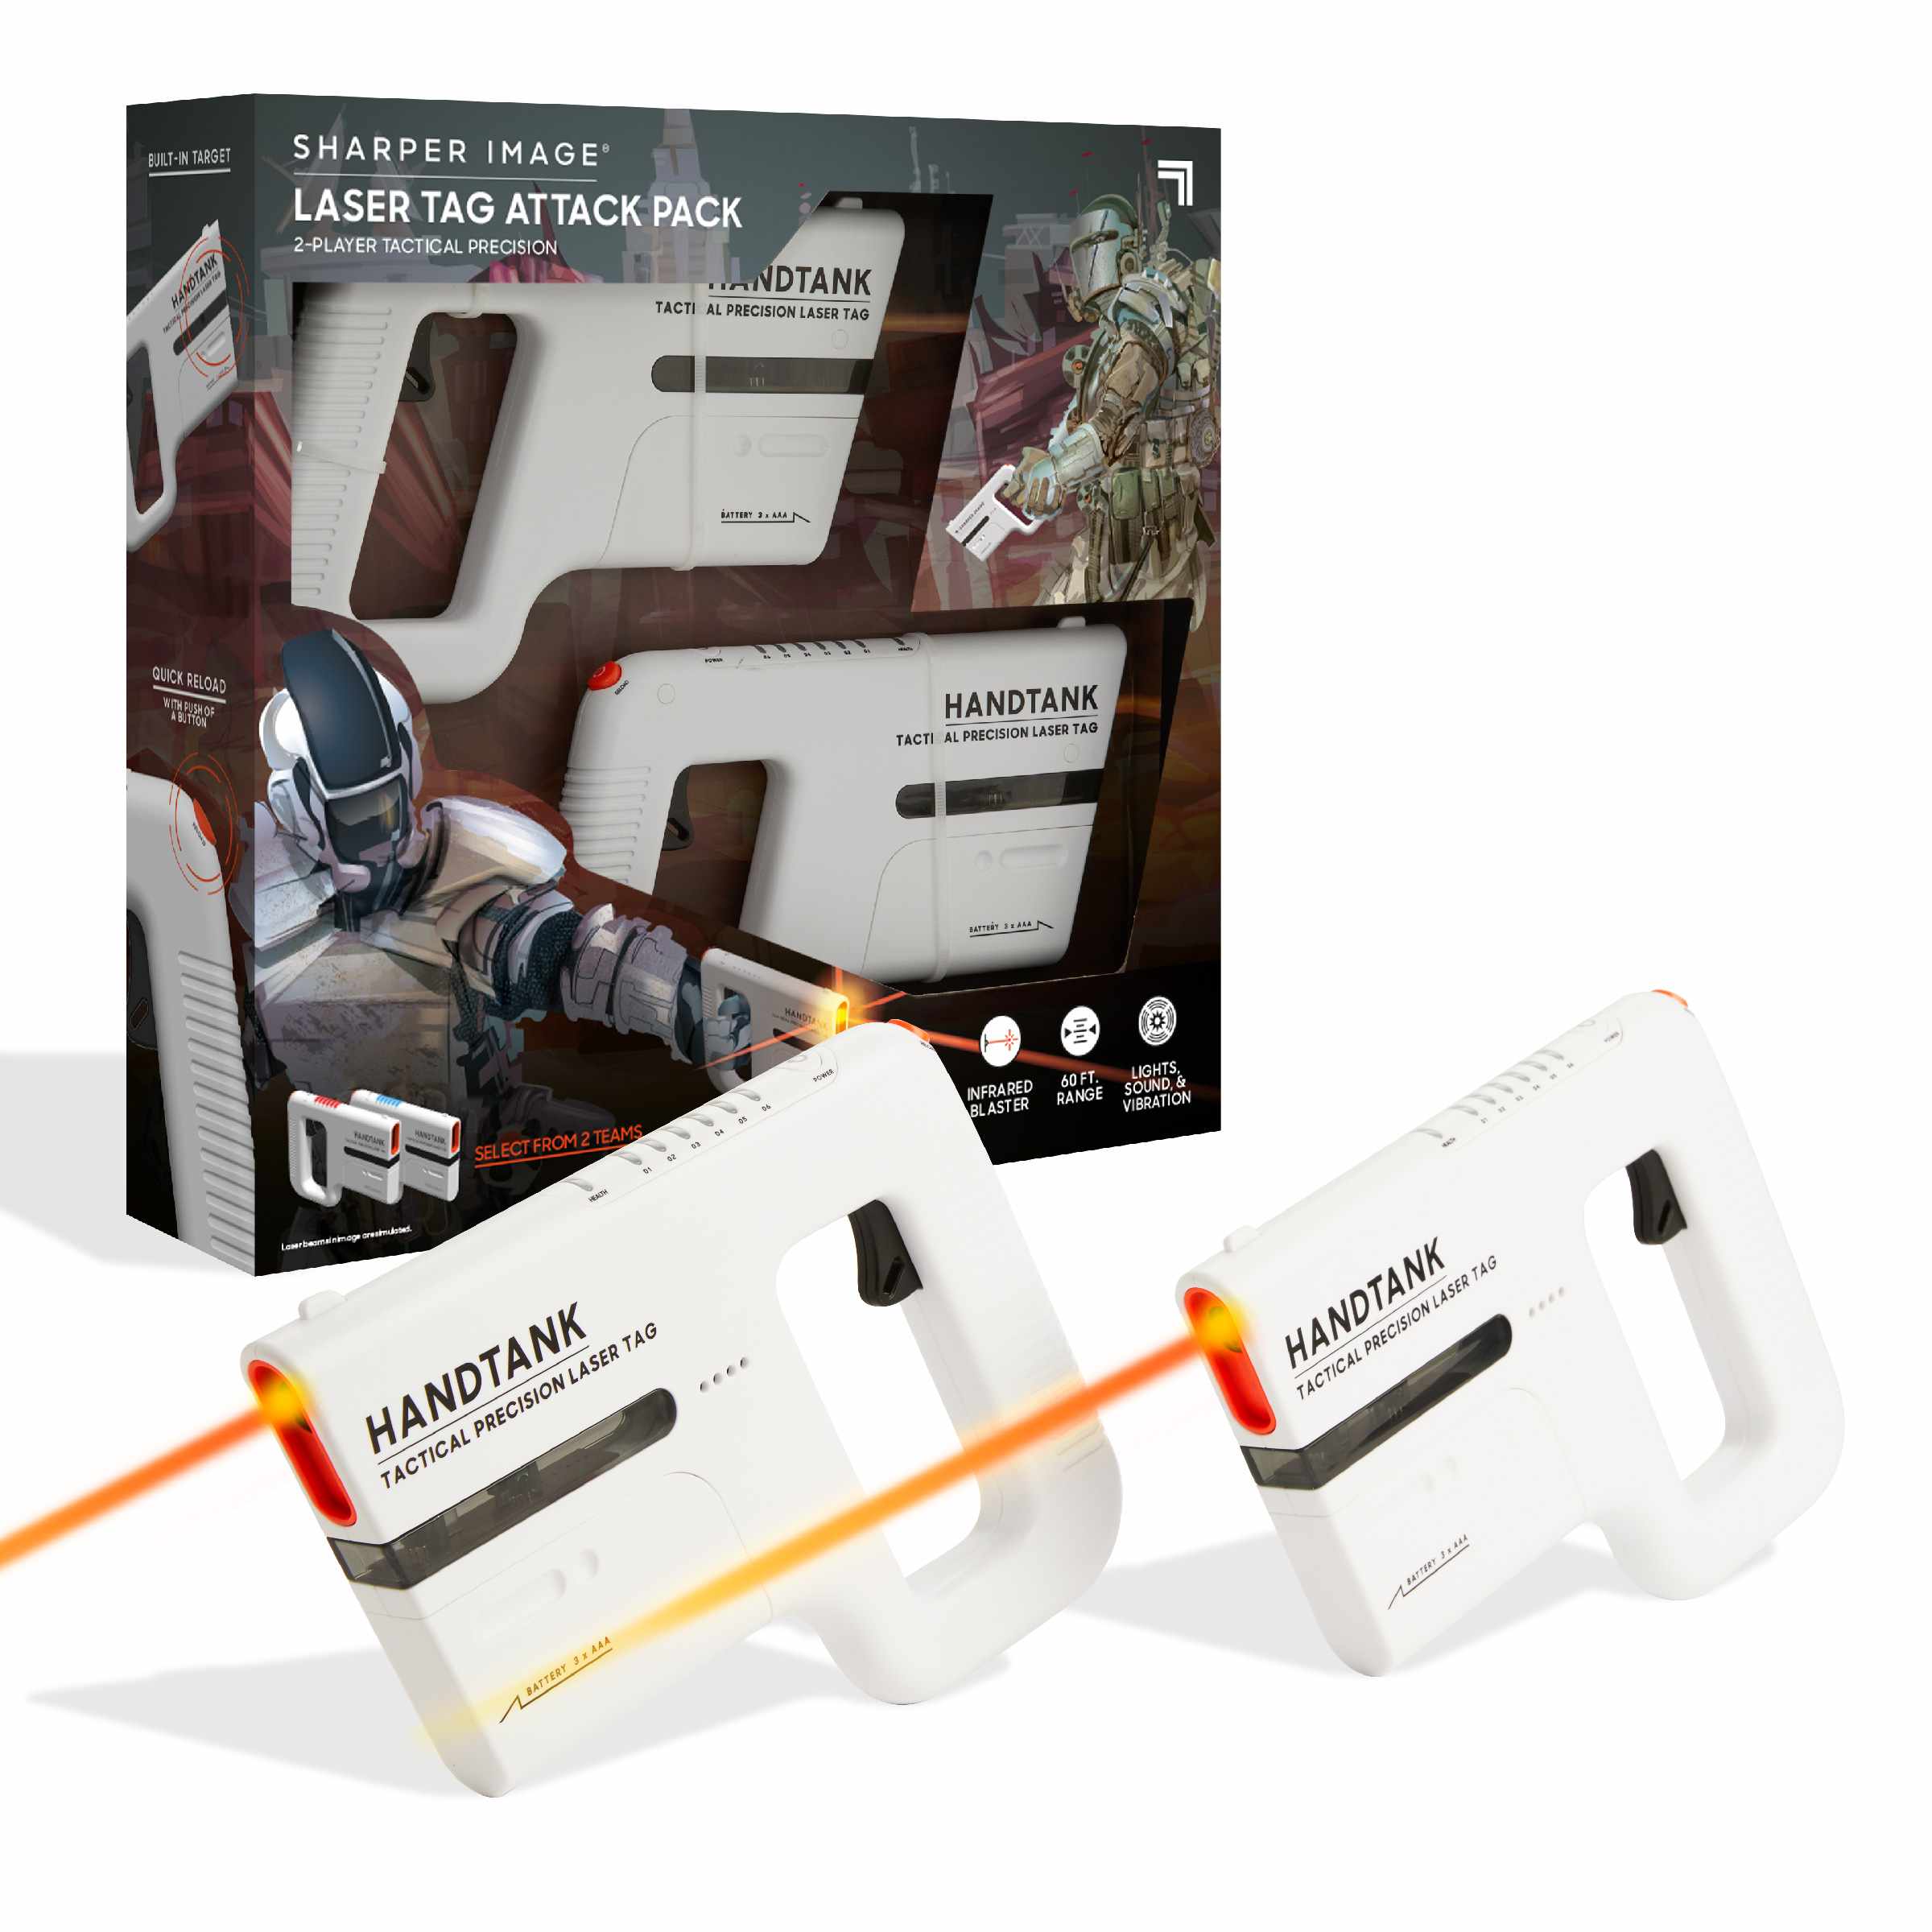 Toy laser tag handtank attack pack - Sharper Image